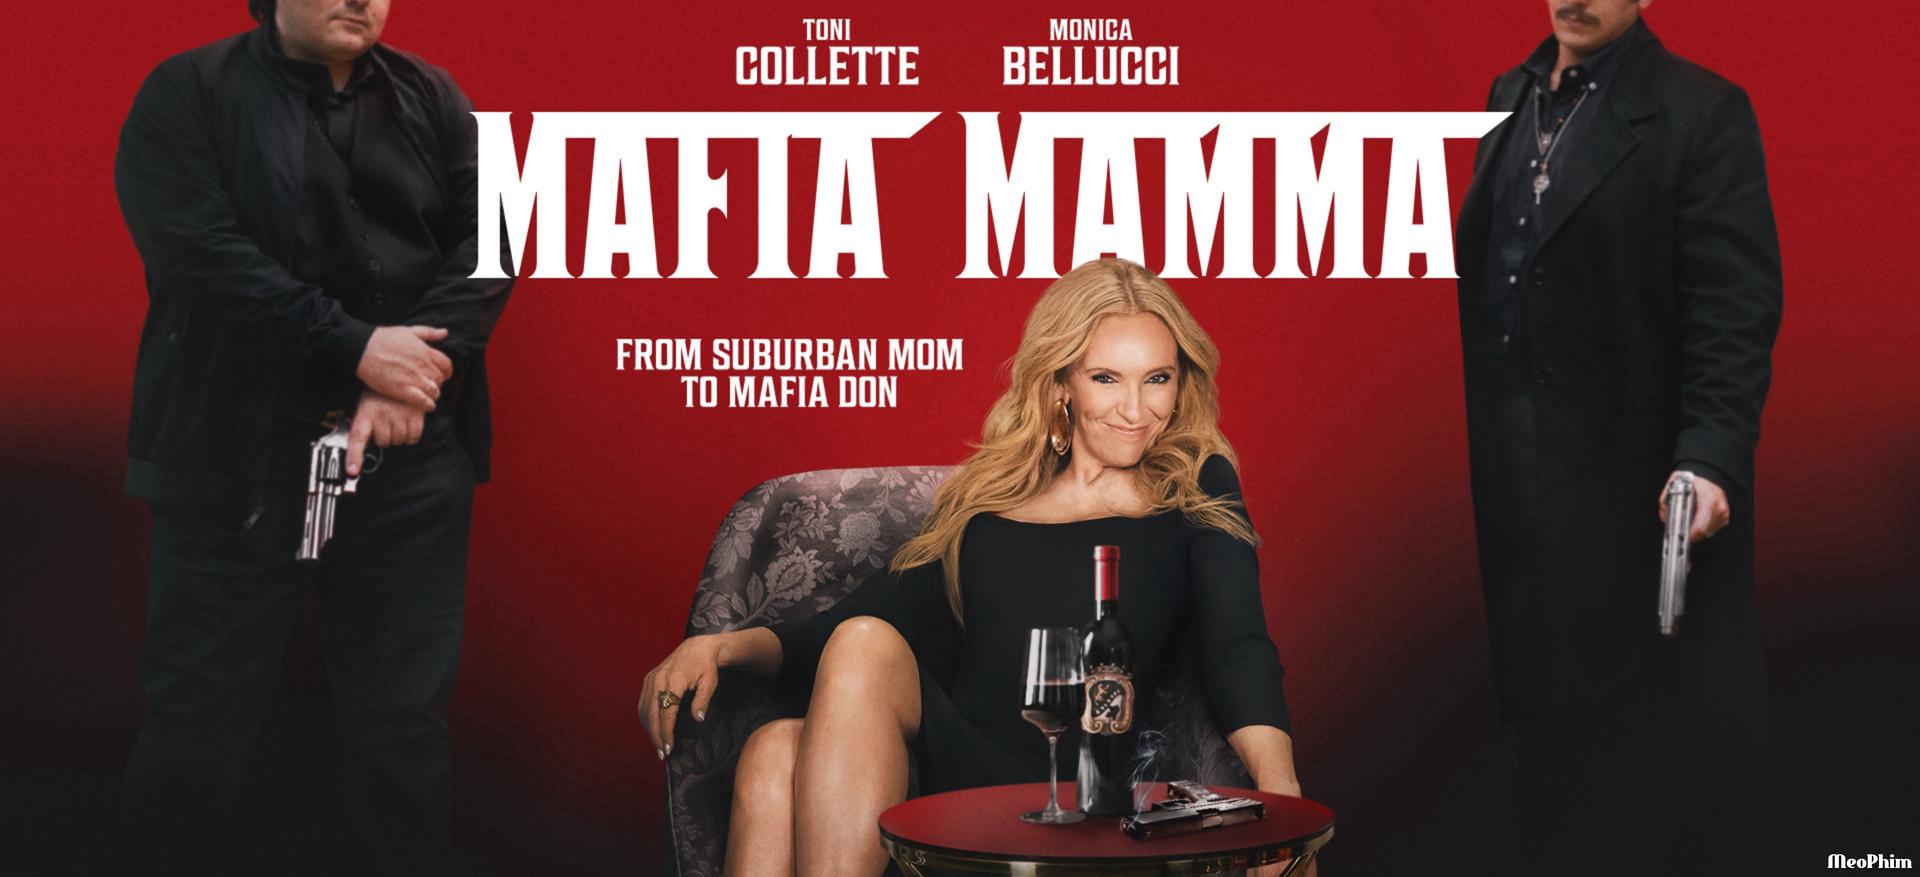 Xem phim Bà Trùm Mafia Mafia Mamma Vietsub